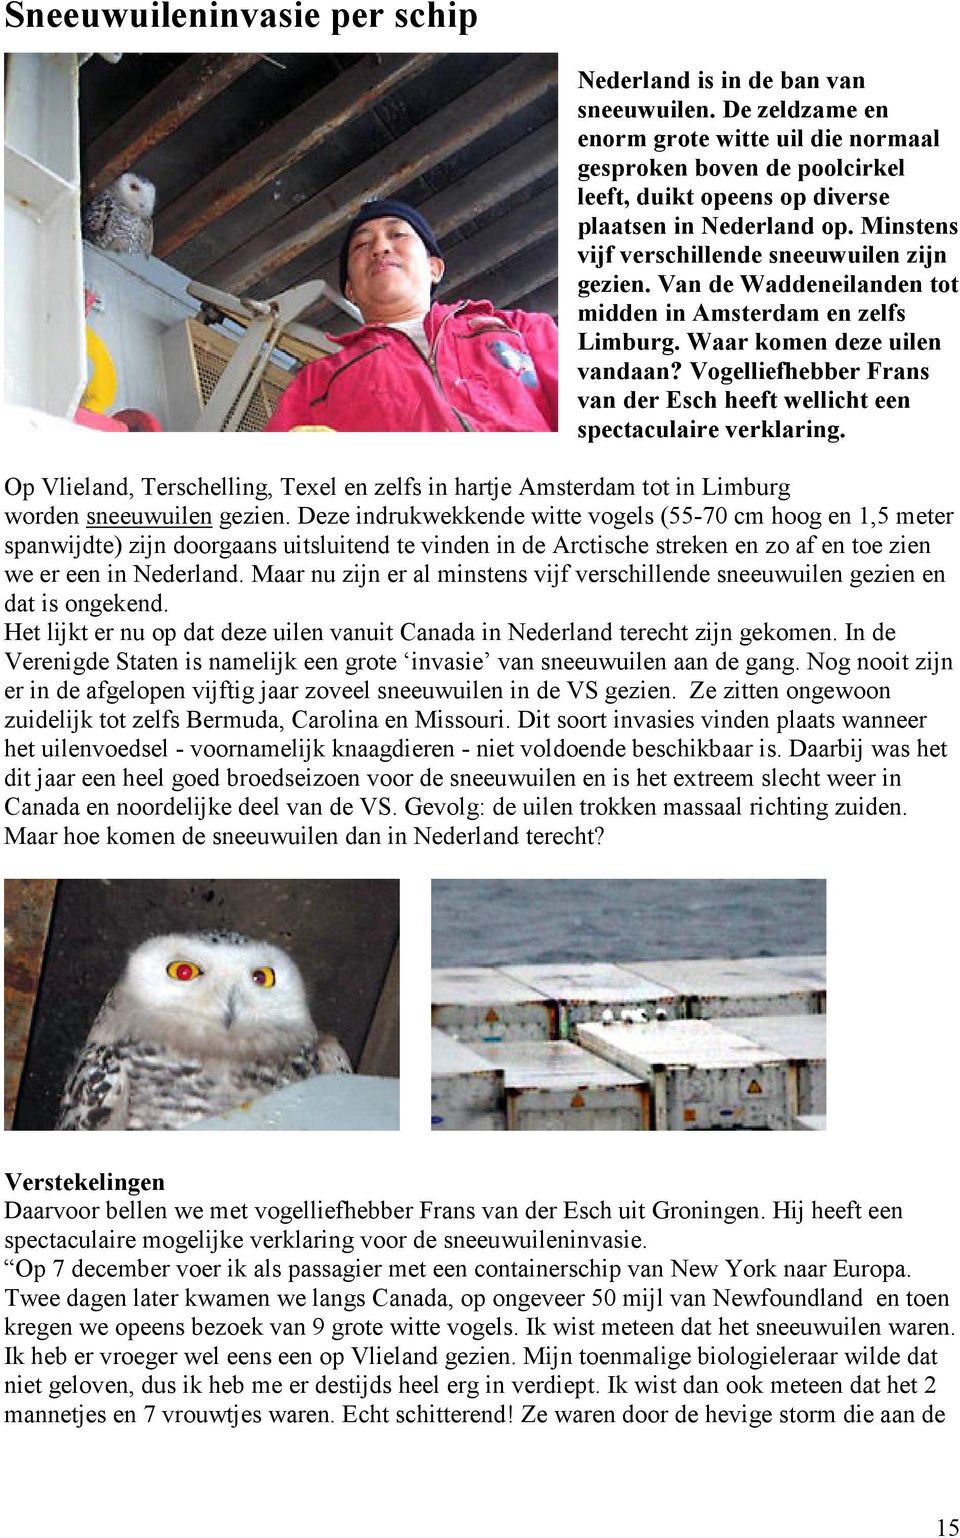 Van de Waddeneilanden tot midden in Amsterdam en zelfs Limburg. Waar komen deze uilen vandaan? Vogelliefhebber Frans van der Esch heeft wellicht een spectaculaire verklaring.